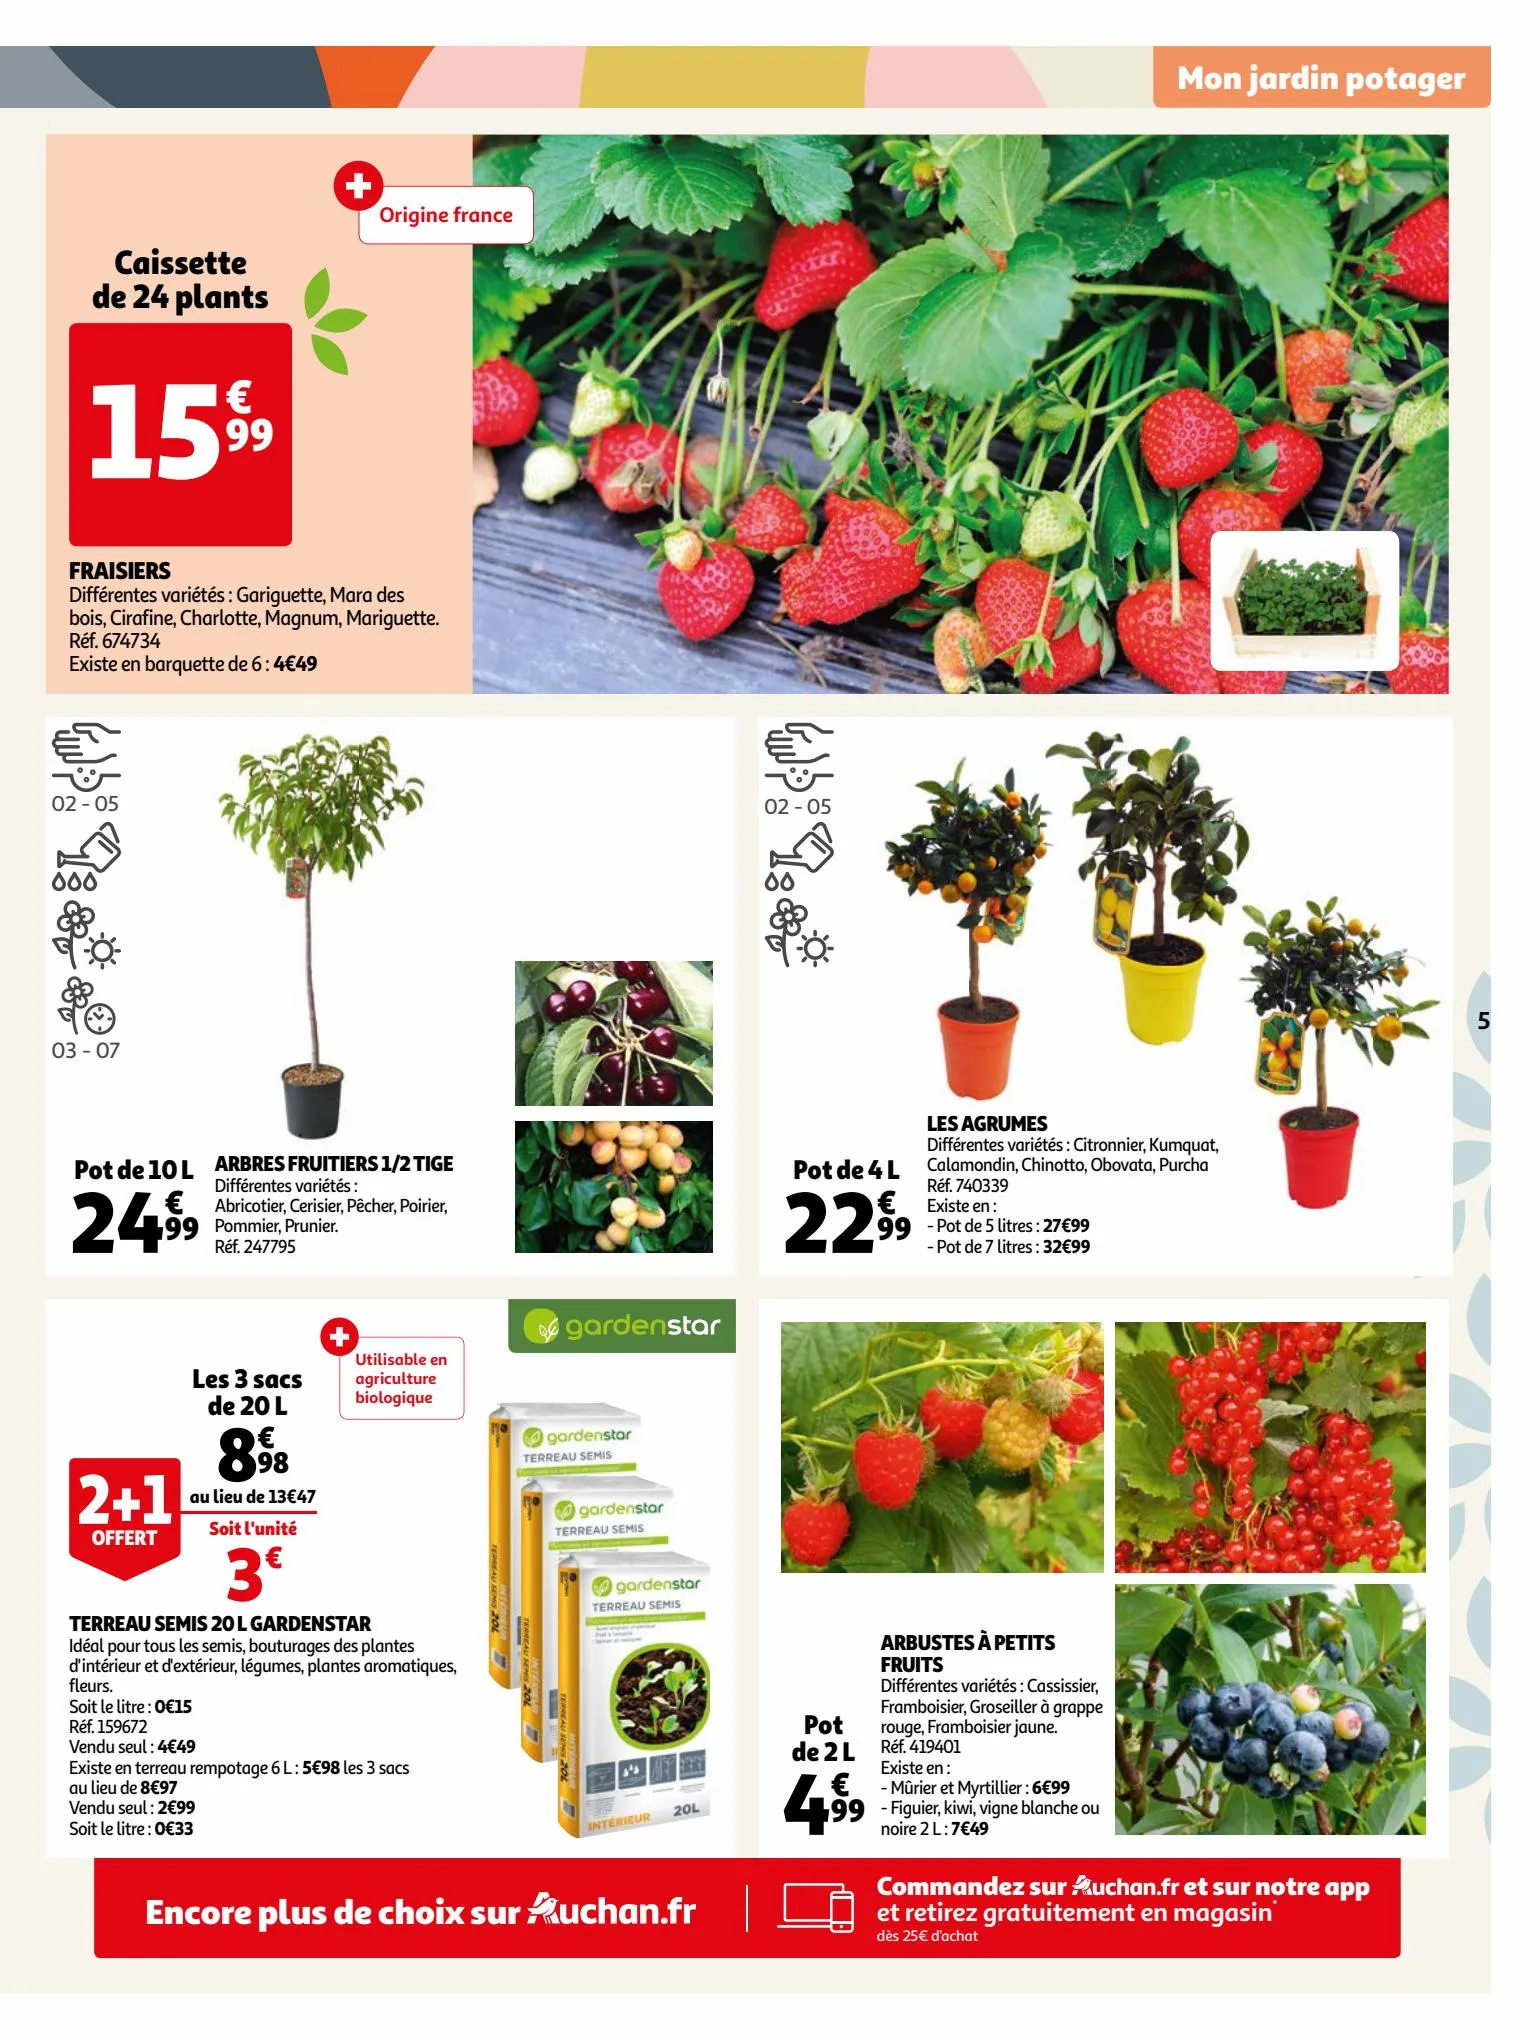 Catalogue Tout pour bien préparer son jardin !, page 00005